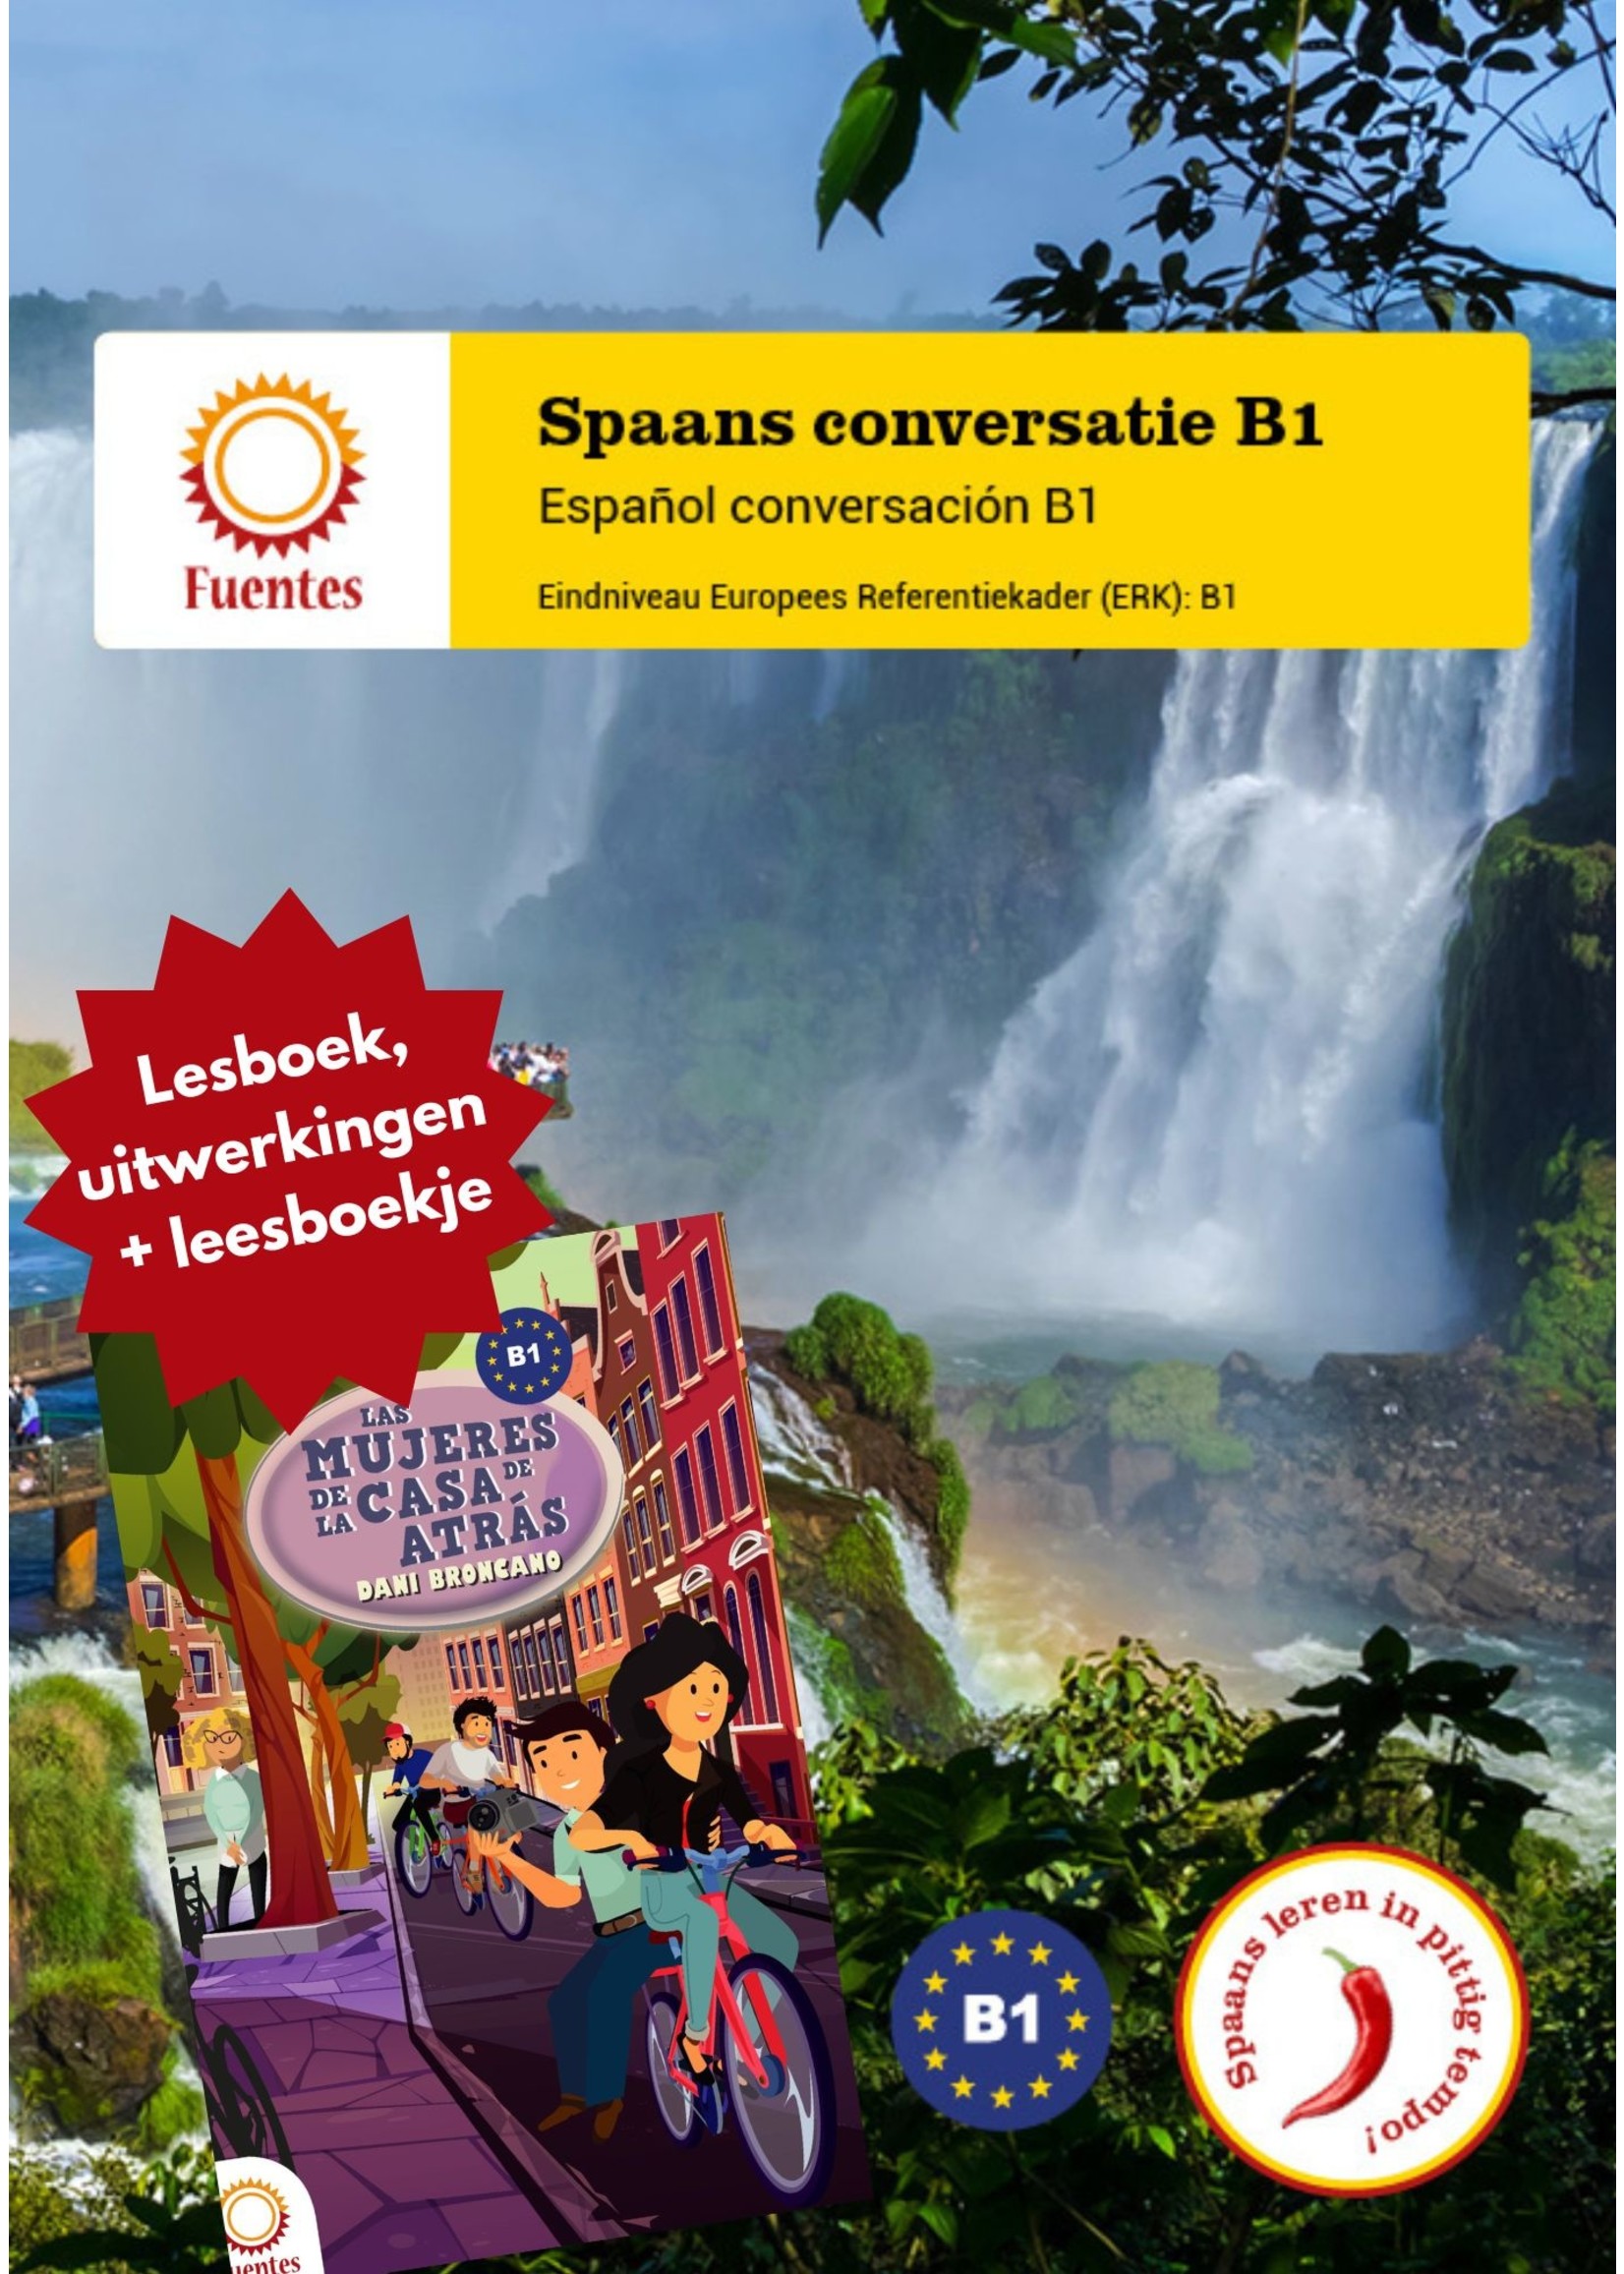 Spaans conversatie B1 - totaalpakket